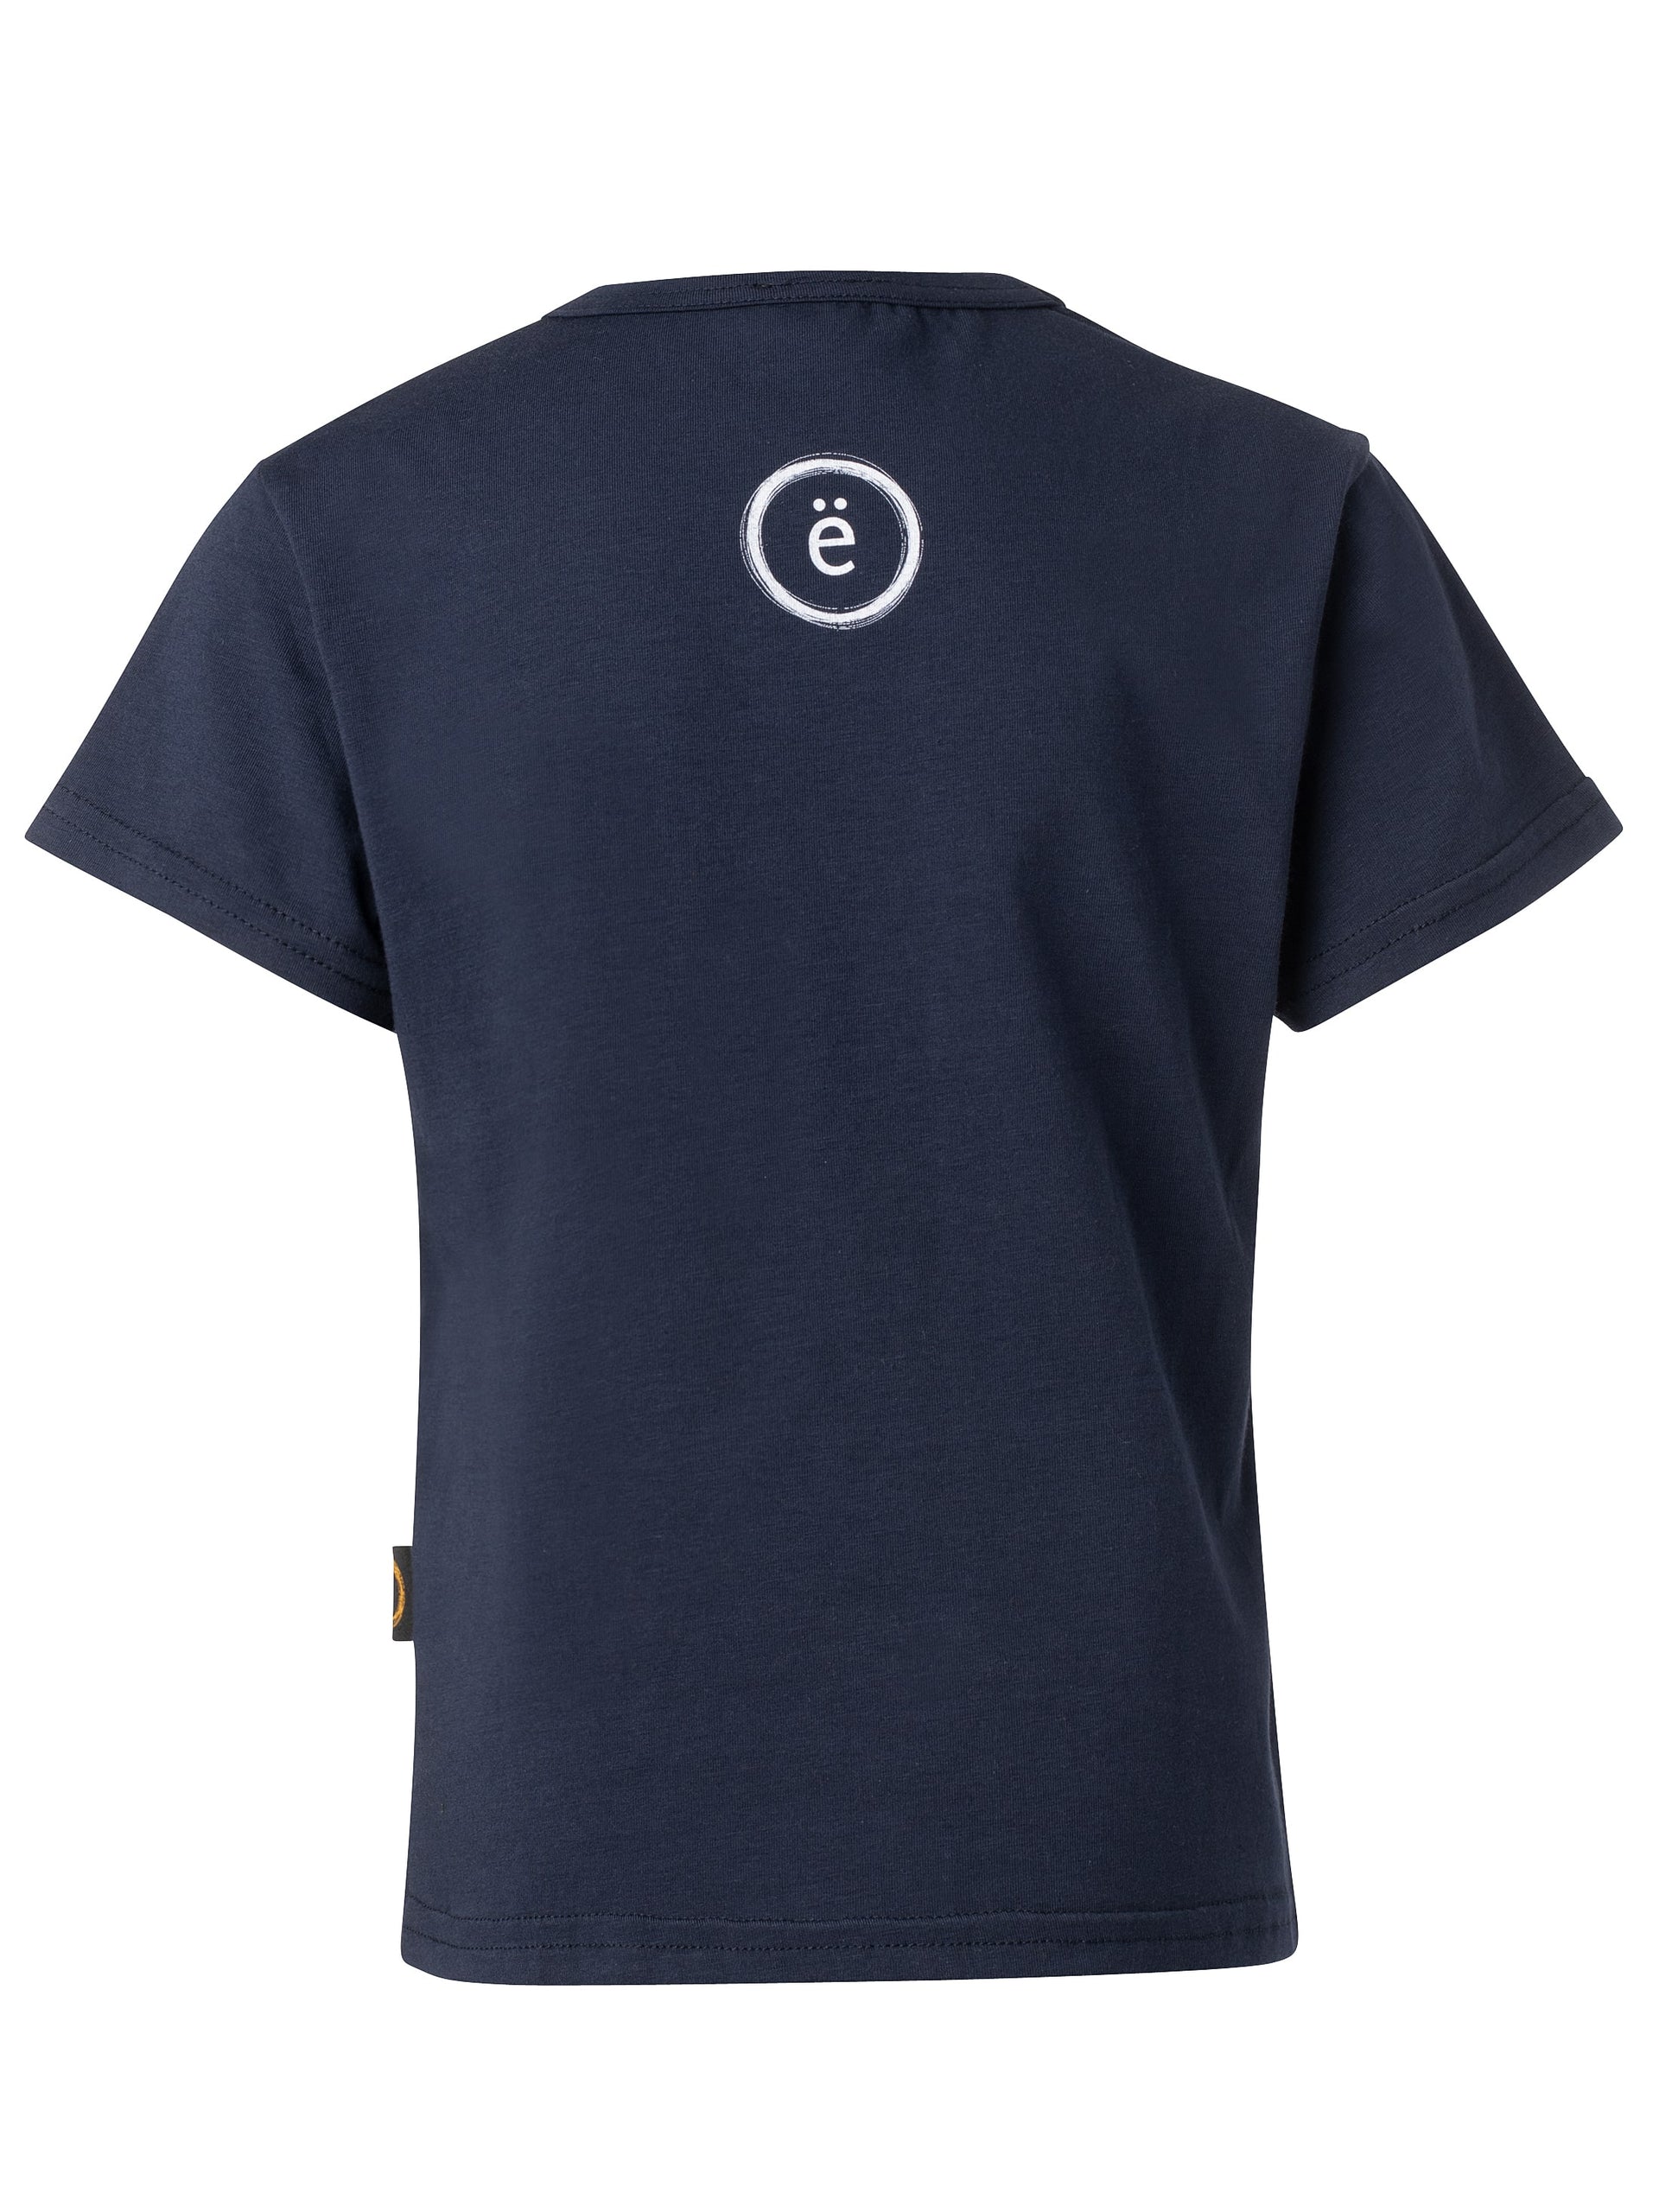 T-shirt enfant-UNISEXE crabe-coton bio-marine-unisexe-ghost dos-FC10